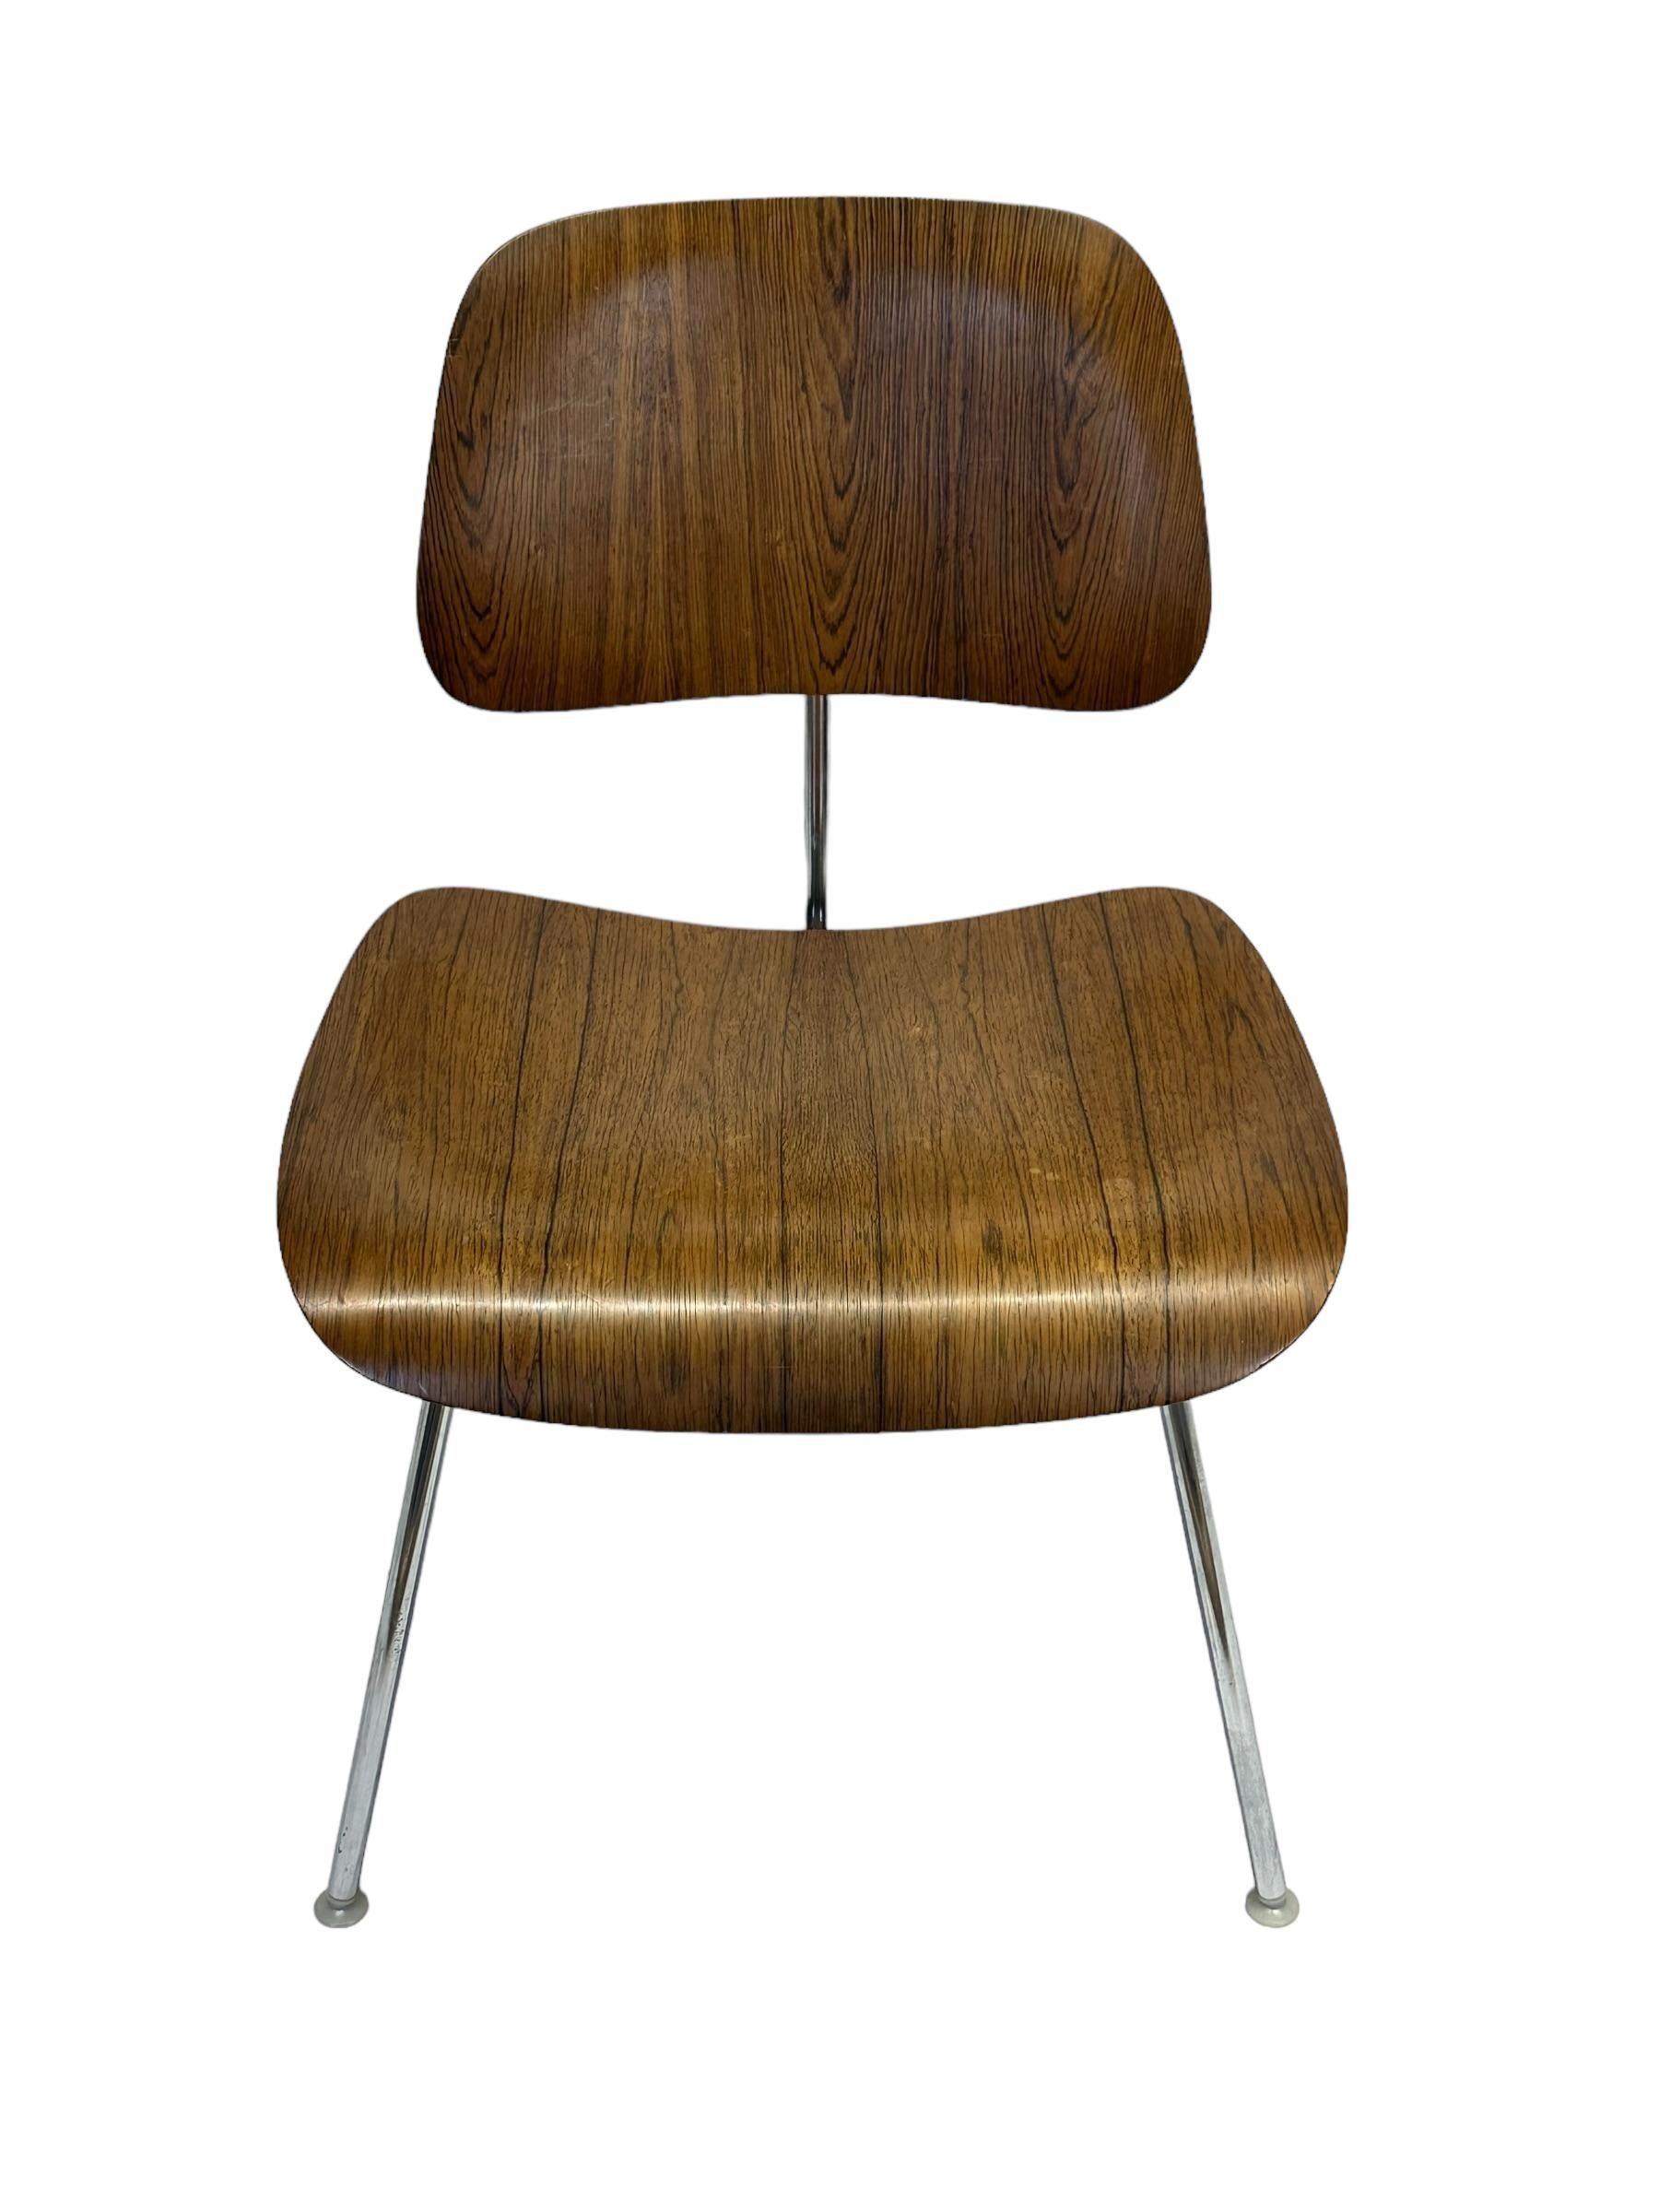 CIRCA Ende der 1950er Jahre Charles und Ray Eames DCM (Dining Chair Metal frame) Stuhl für Herman Miller. Ausgeführt in Chromstahl und brasilianischem Palisanderholz. Es handelt sich um eine Sonderanfertigung, die in weitaus geringerer Stückzahl